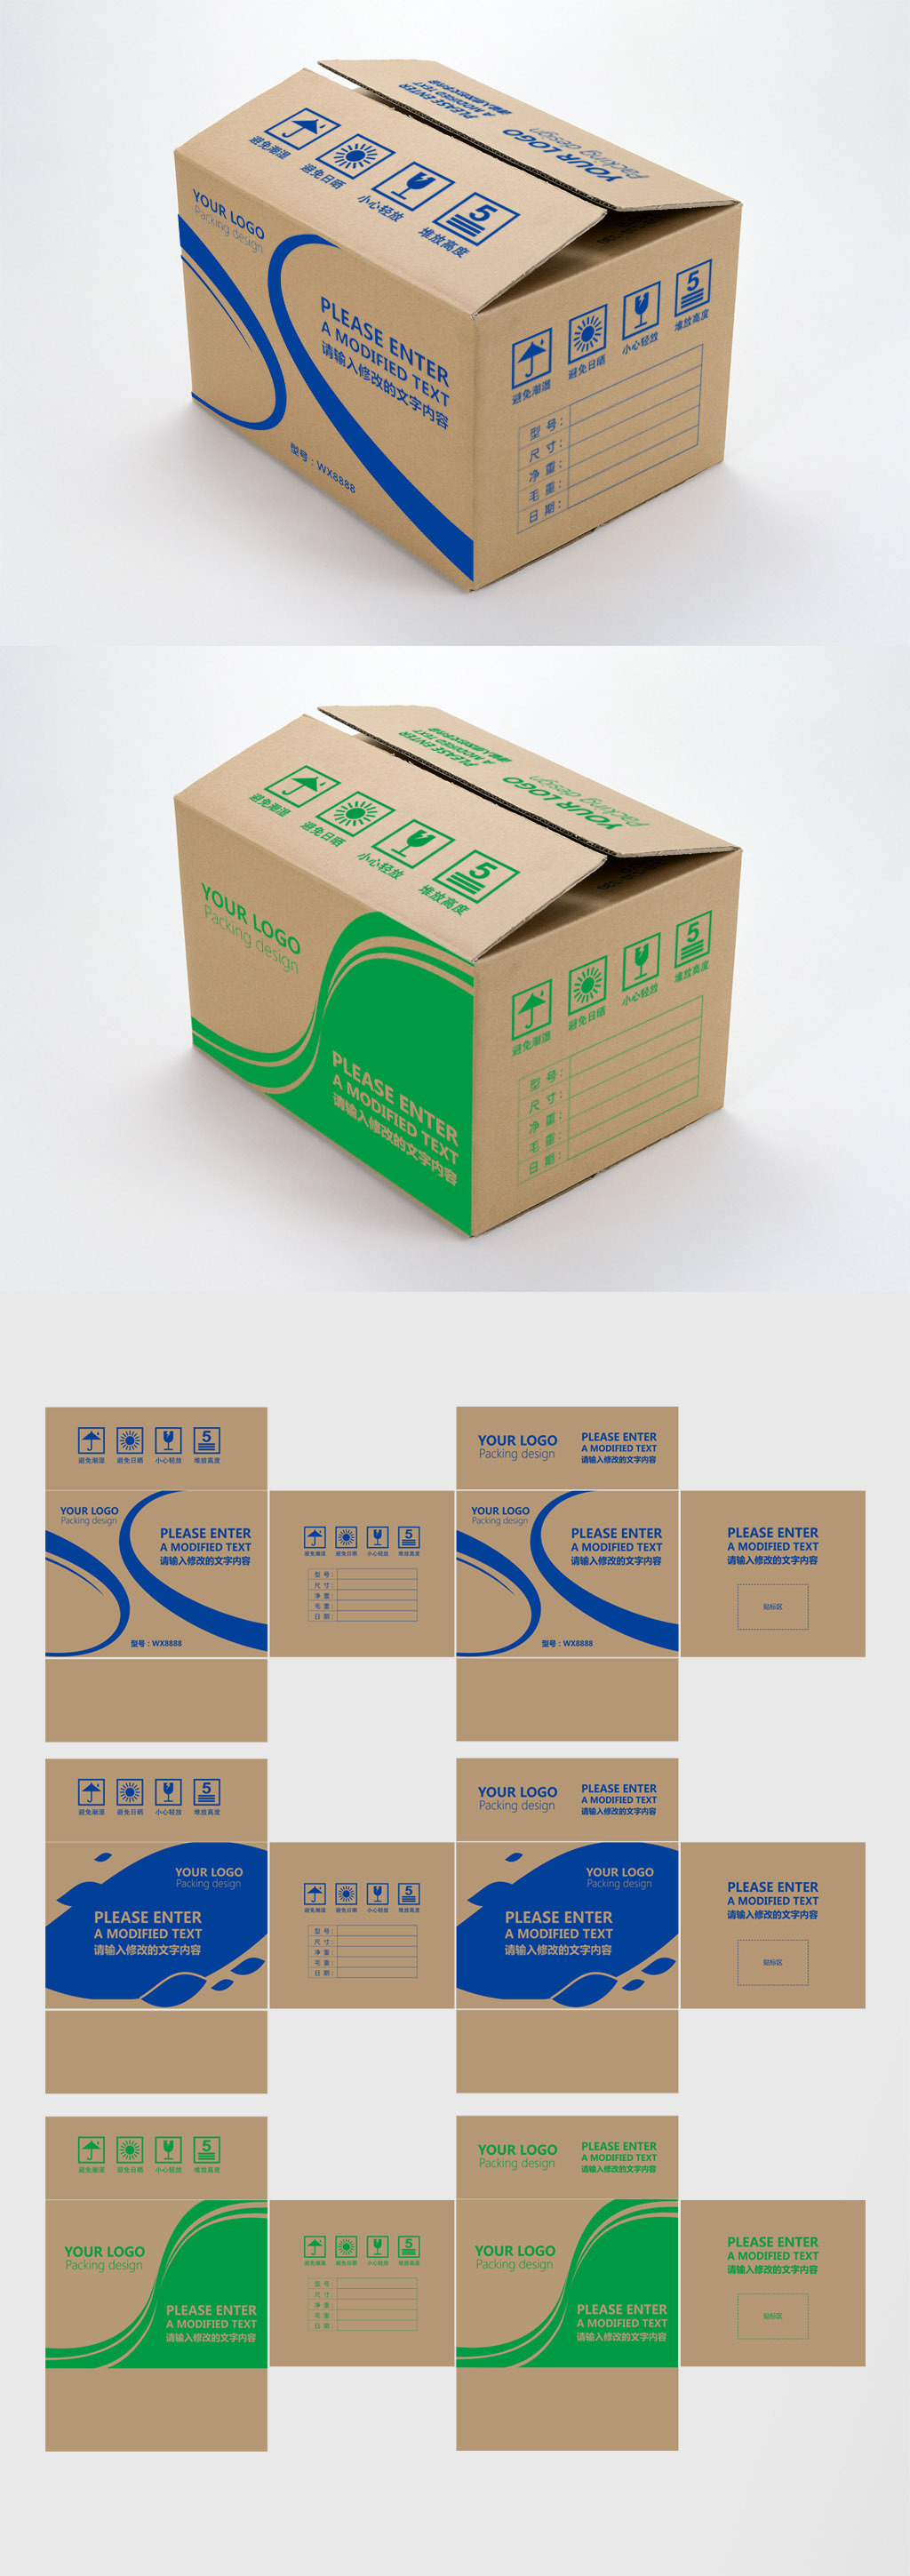 原创通用牛皮纸箱运输外箱产品包装设计模板-版权可商用